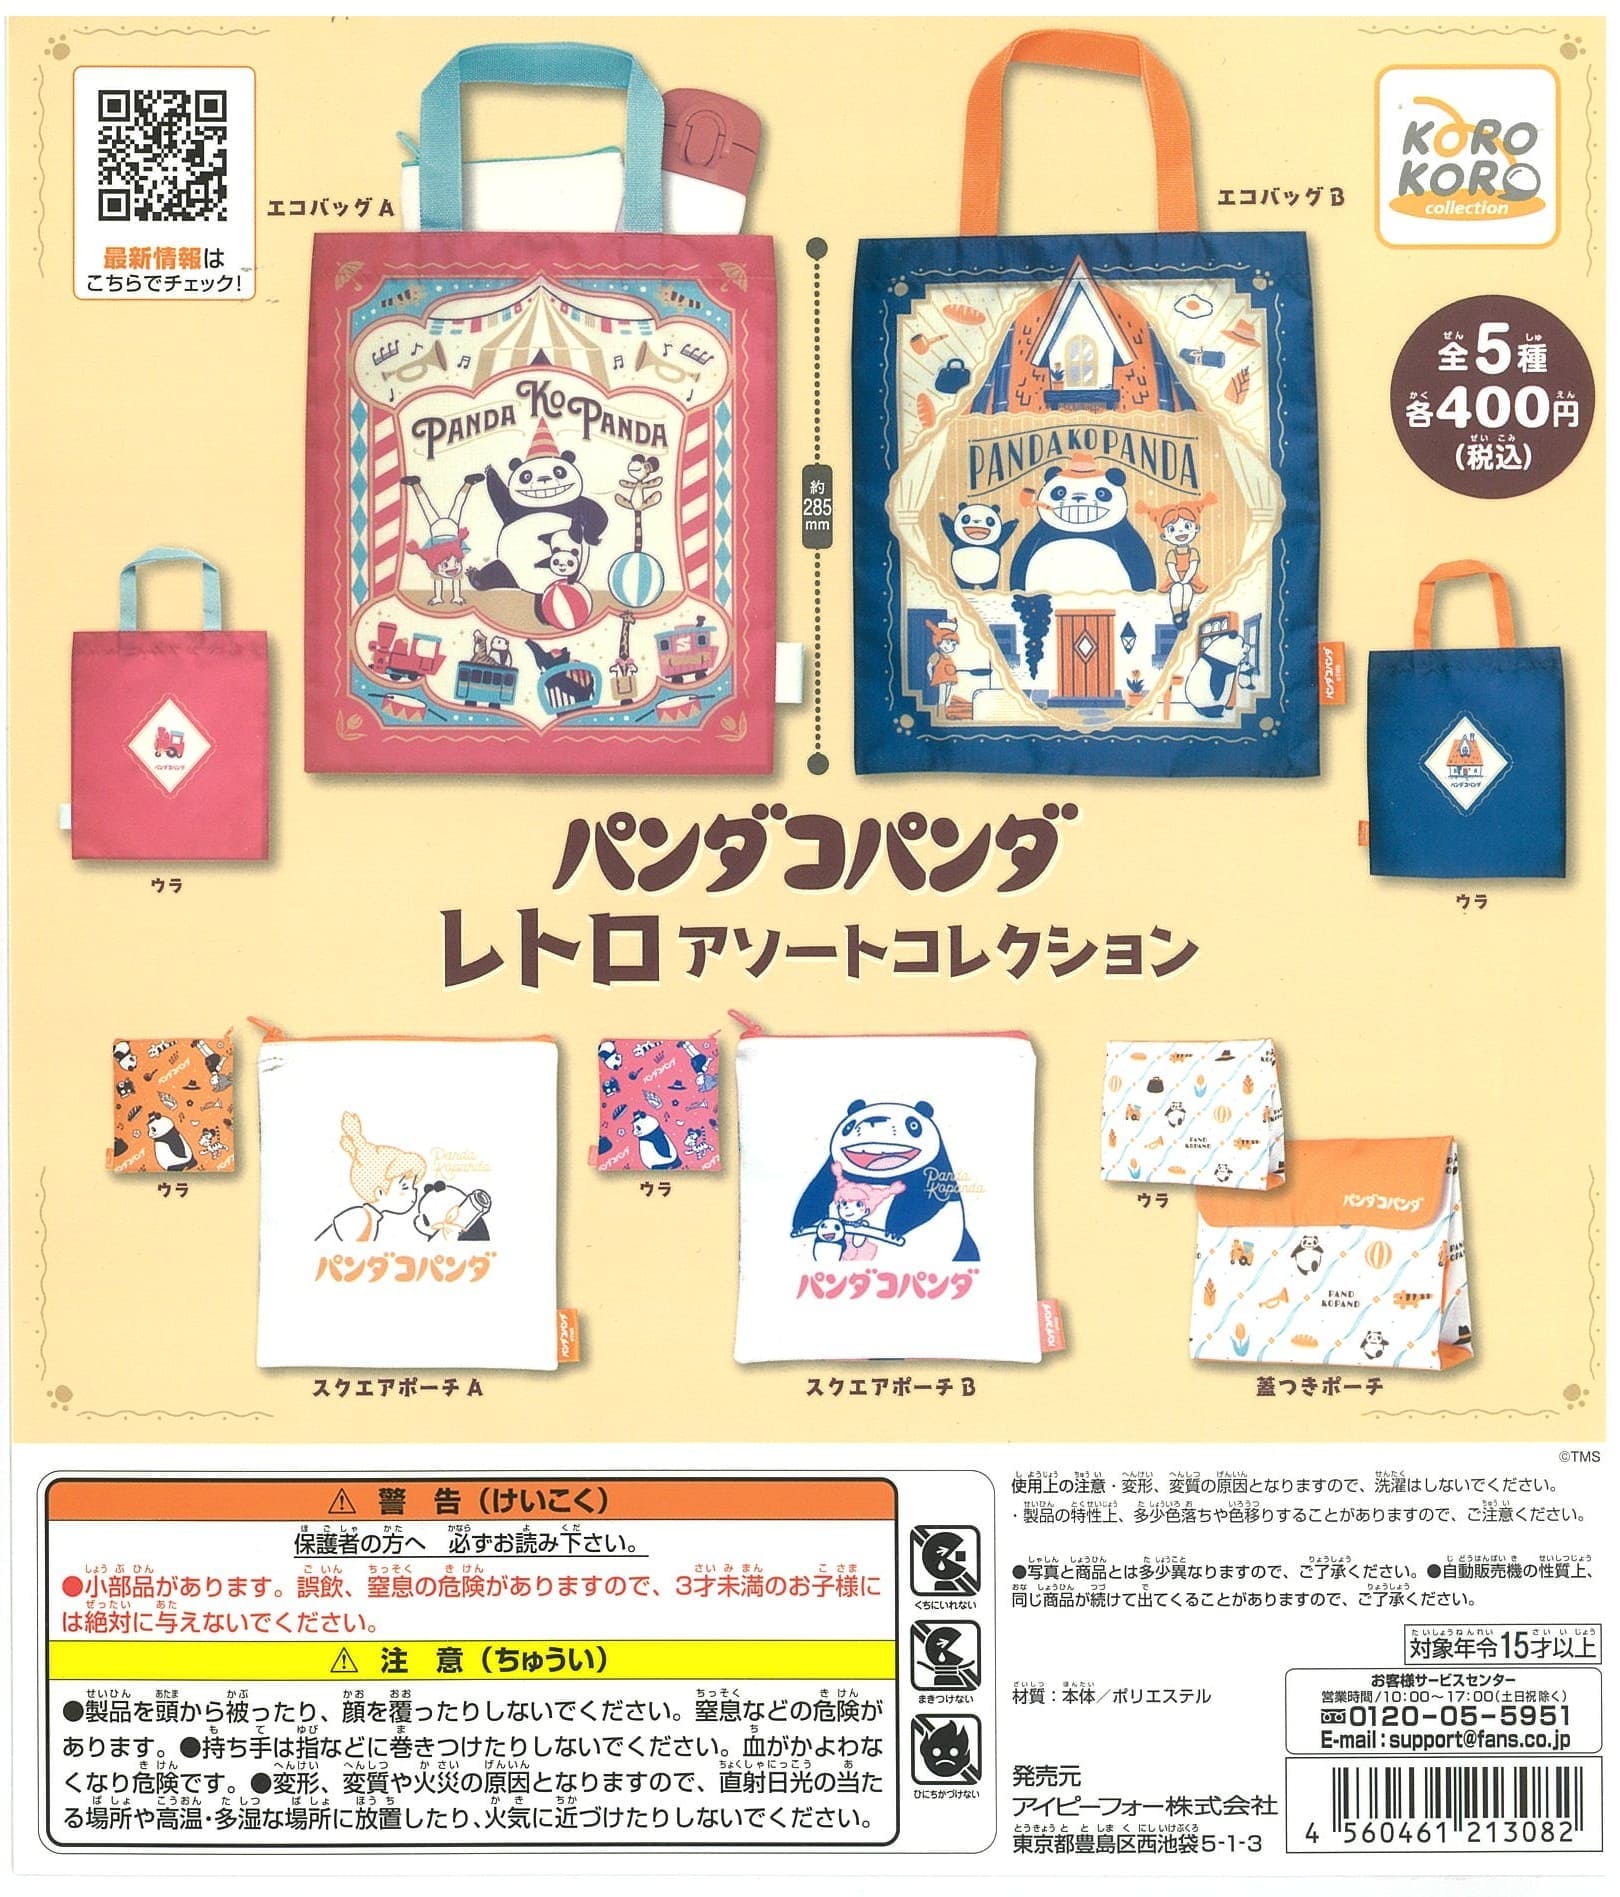 KoroKoro Collection CP2064 Panda Kopanda Retro Assort Collecon